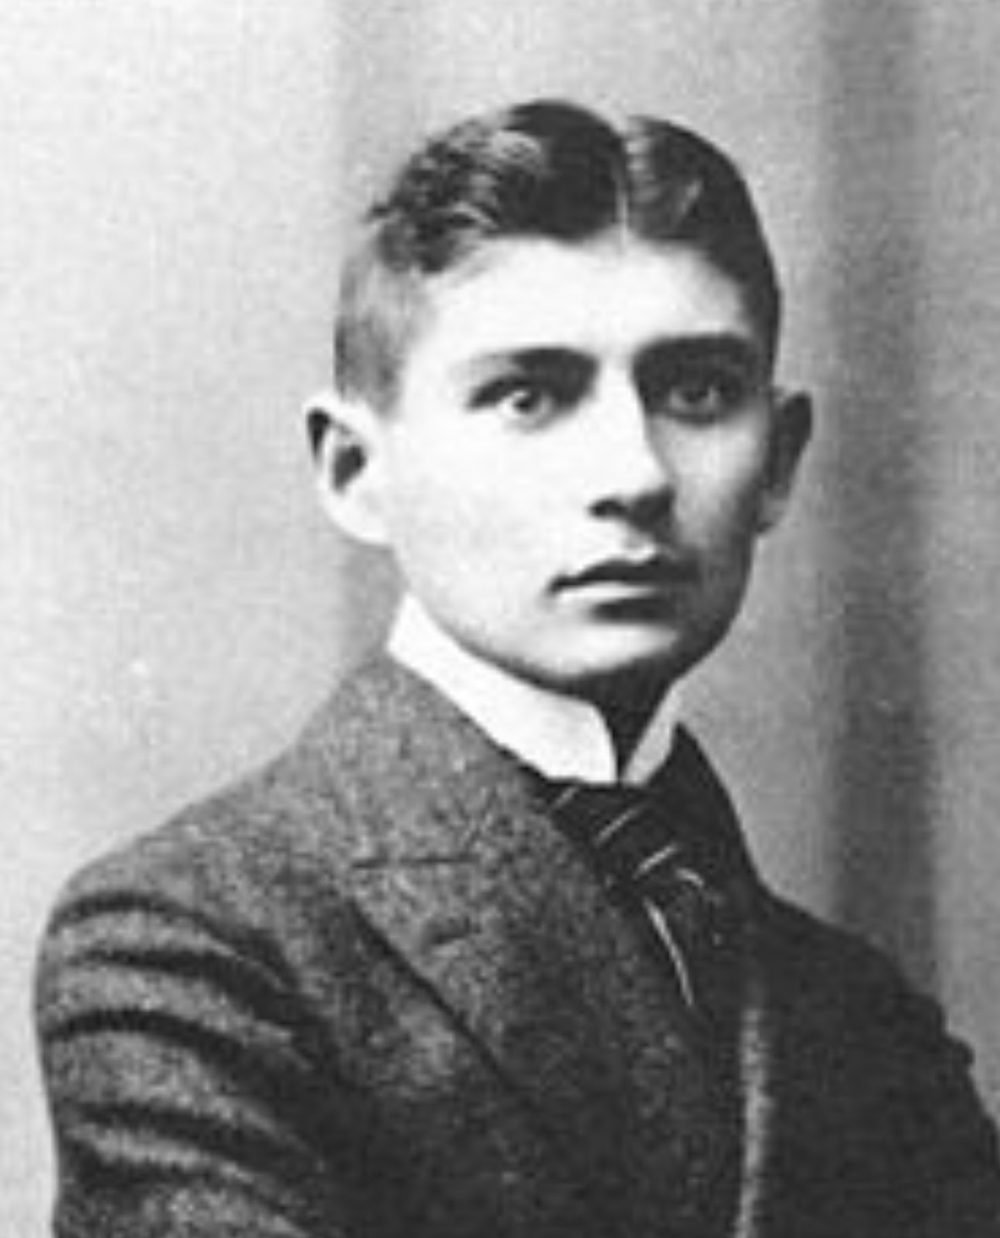 nha van franz kafka e1587164076664 - Franz Kafka: Người kiến tạo nên mê cung văn học kỳ vĩ